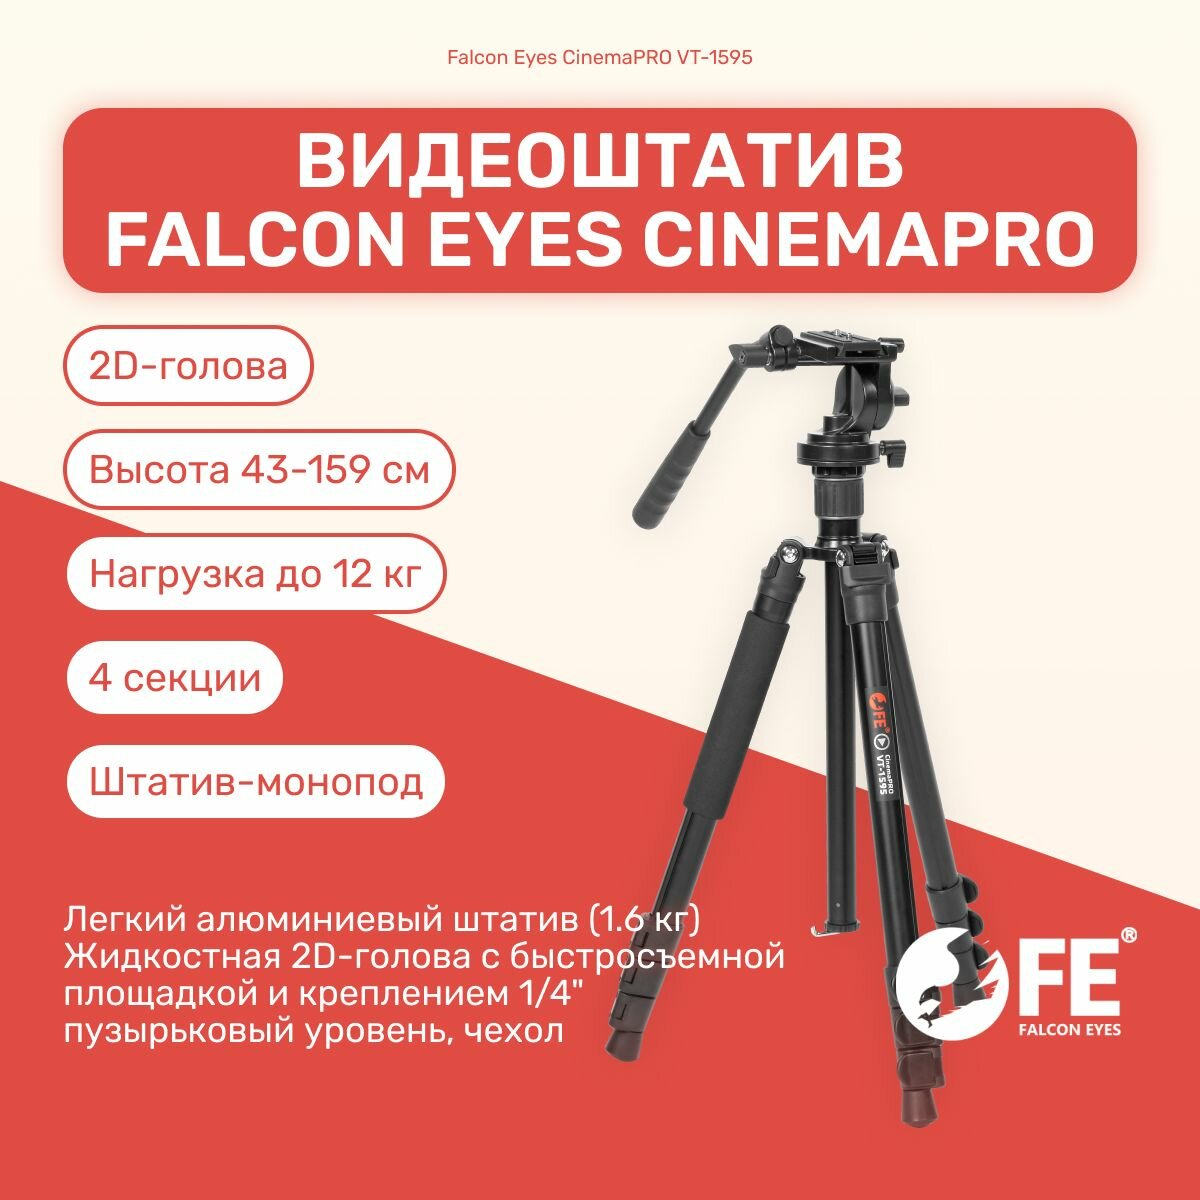 Видеоштатив Falcon Eyes CinemaPRO VT-1595 159 см, оборудование для съемки, фото/видеостудии